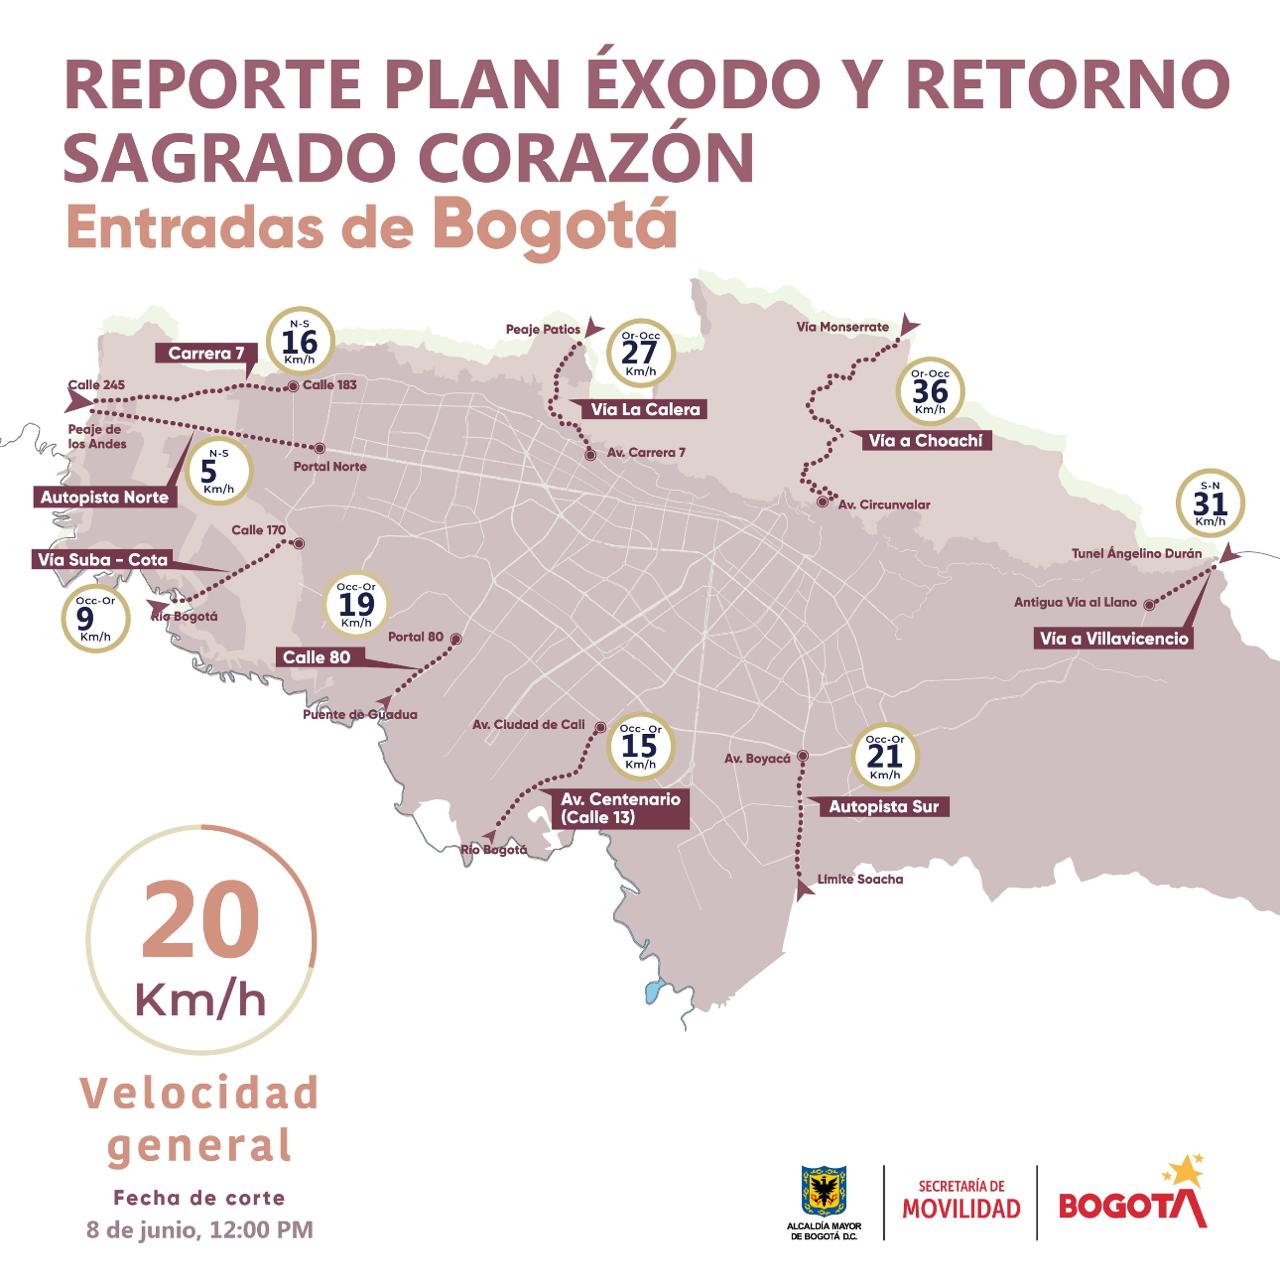 Resumen de reporte de volúmenes y velocidades a las 12:00 horas - crédito Alcaldía de Bogotá